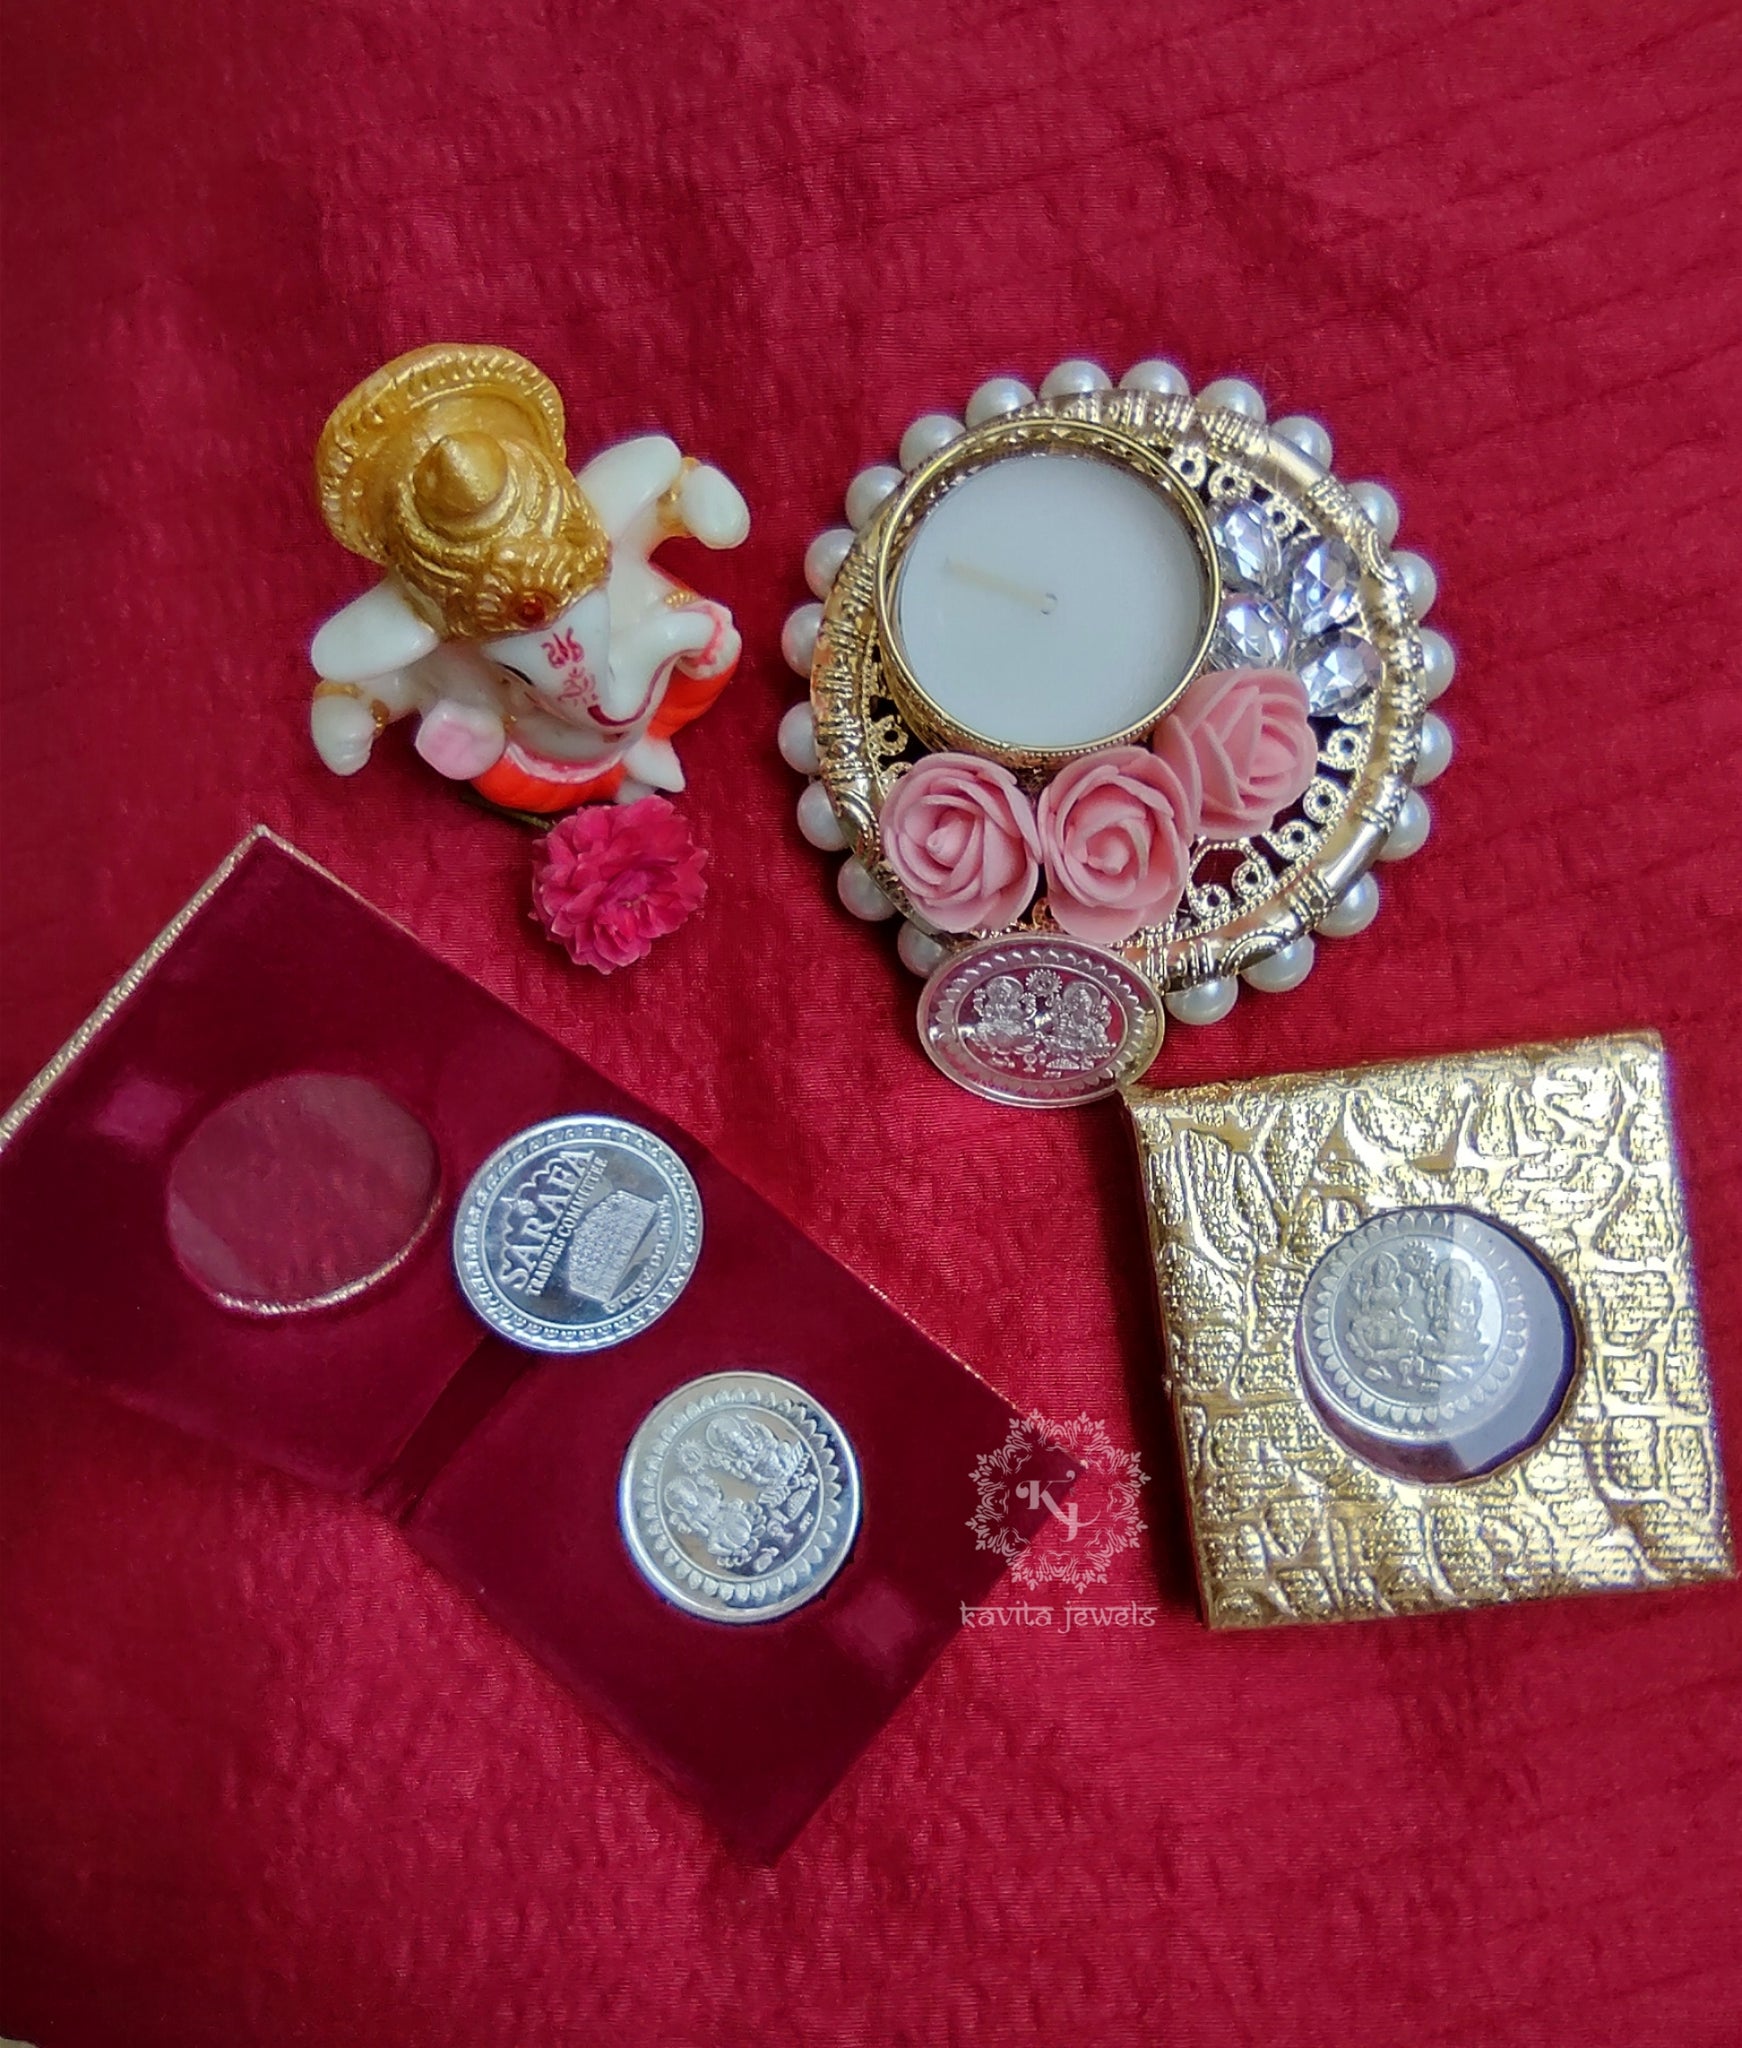 Rakhi box nd platter - Gift Packing Material By Mamta Sachdeva | Facebook